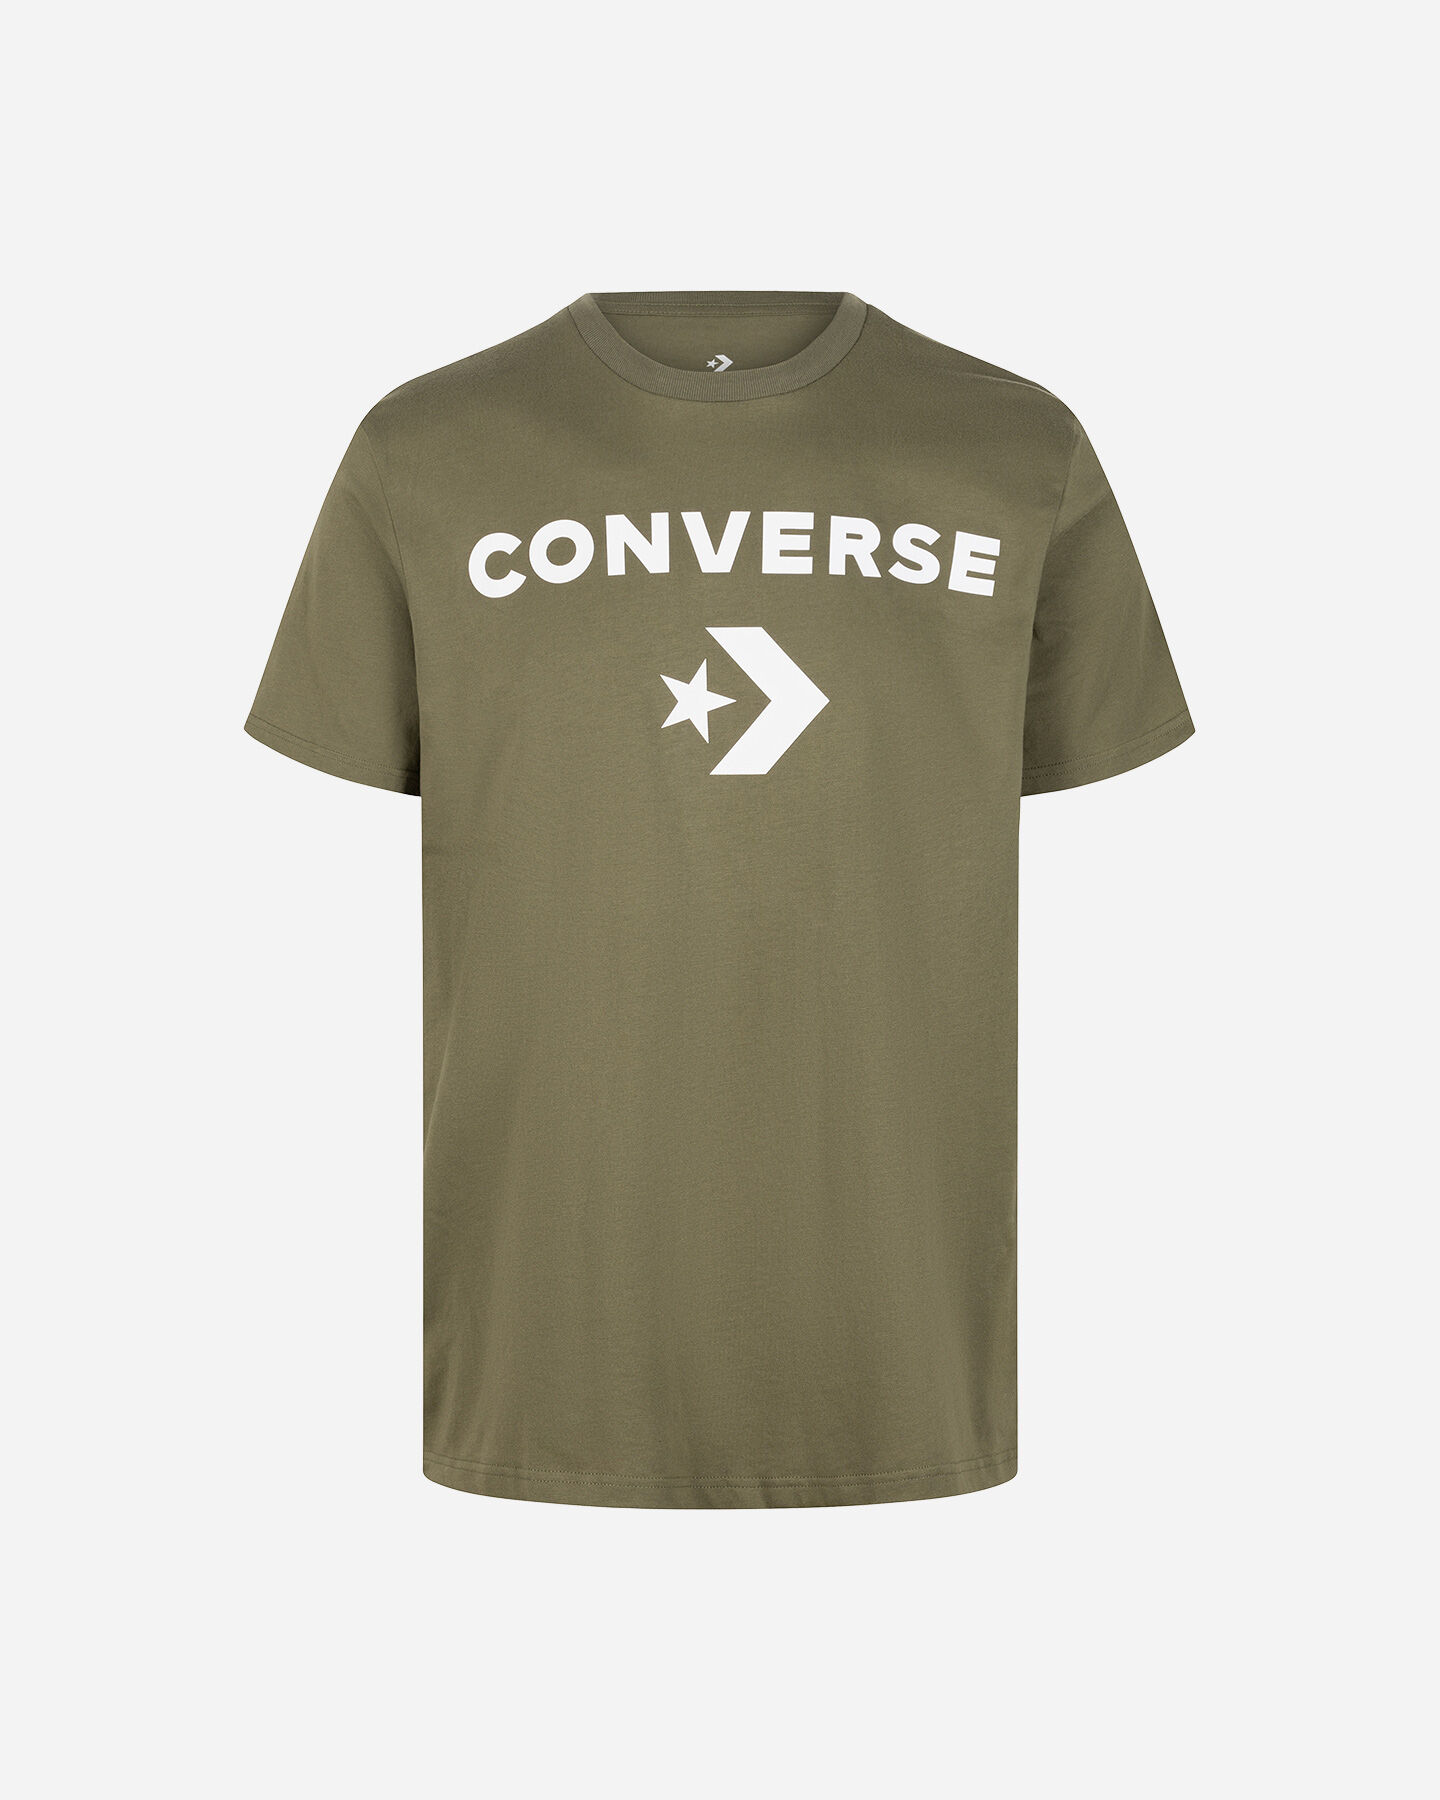  T-Shirt CONVERSE STAR CHEVRON M S5673828|306|S scatto 0